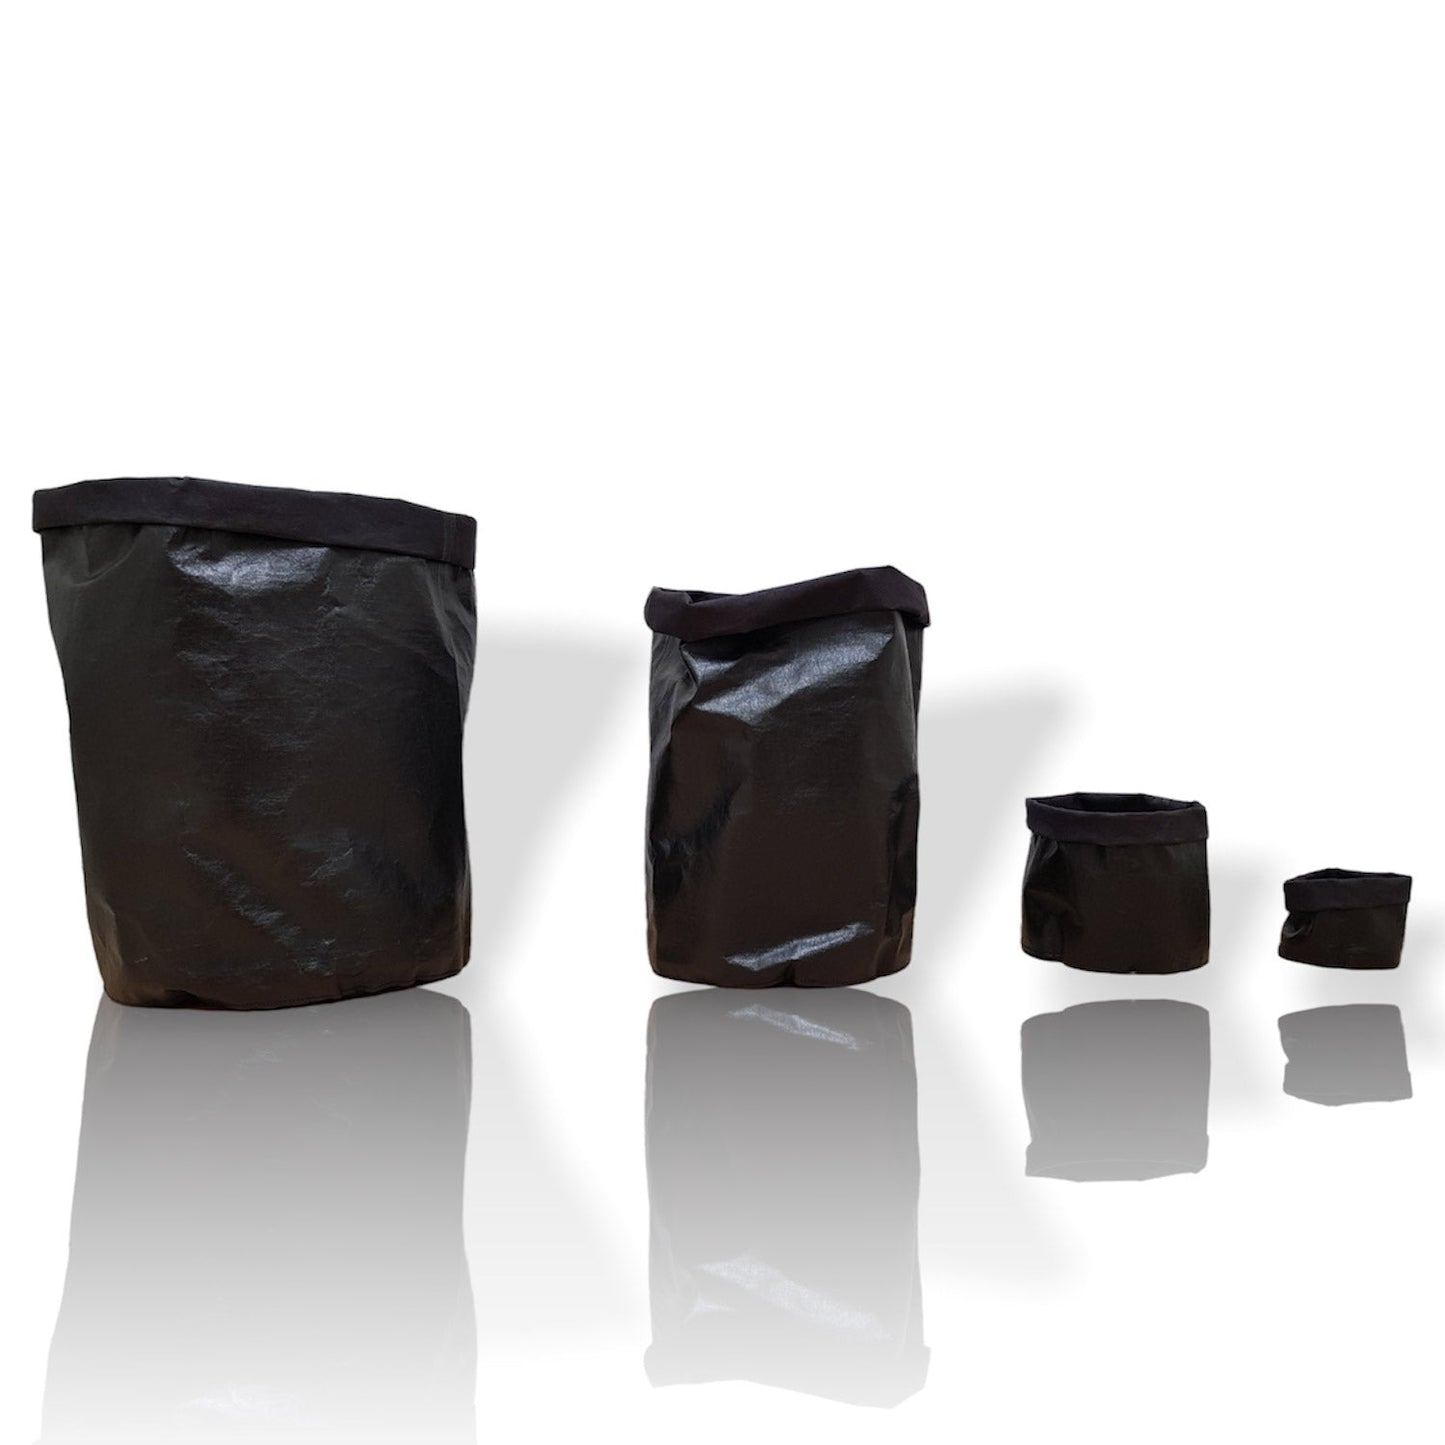 Cellulose baskets - Premium Bags & accessories from L&E Studio